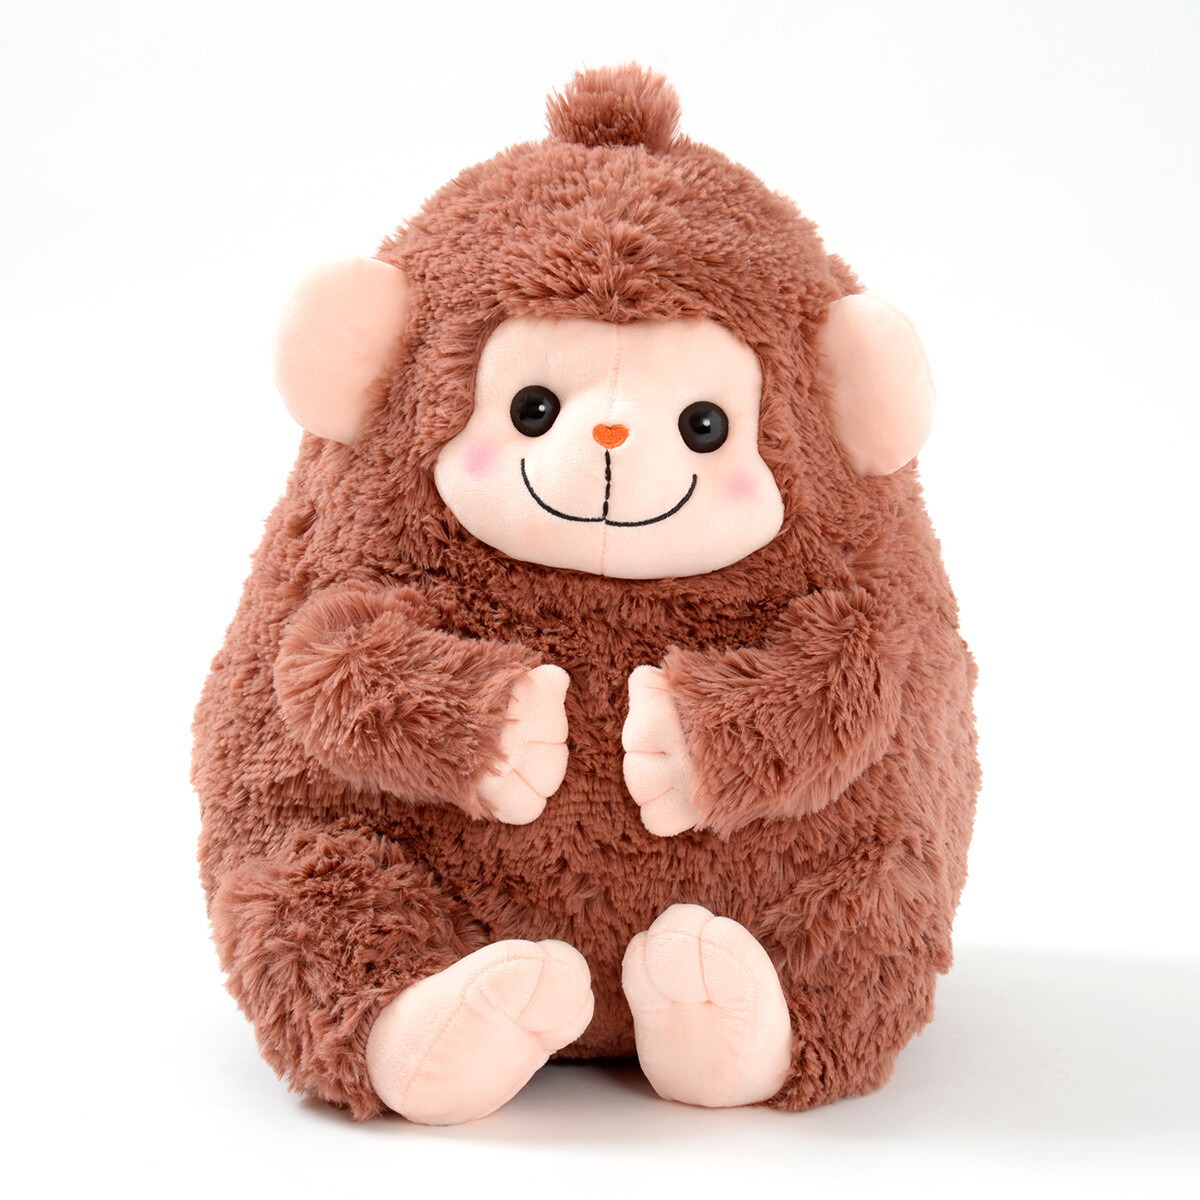 big monkey teddy bear